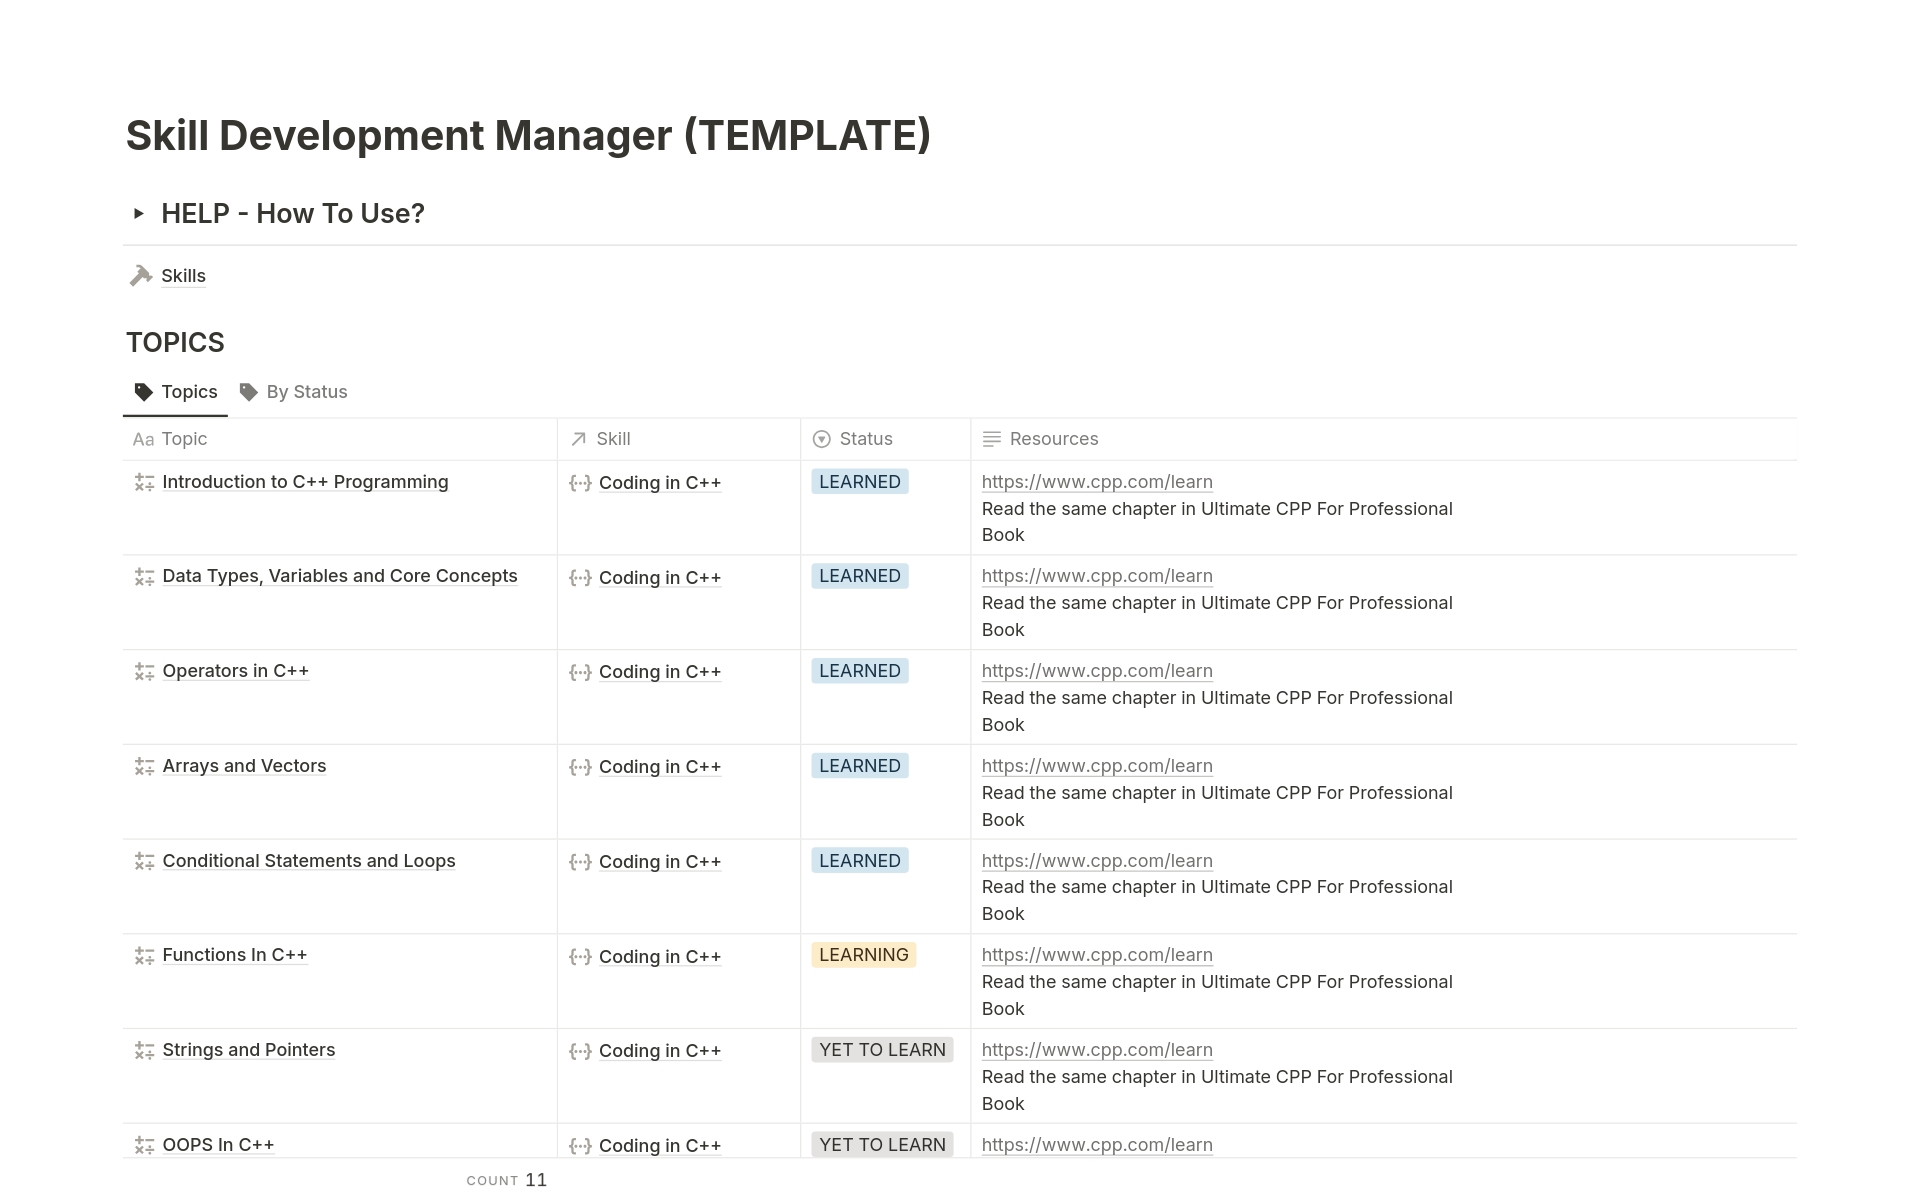 Vista previa de una plantilla para Skill Development Manager